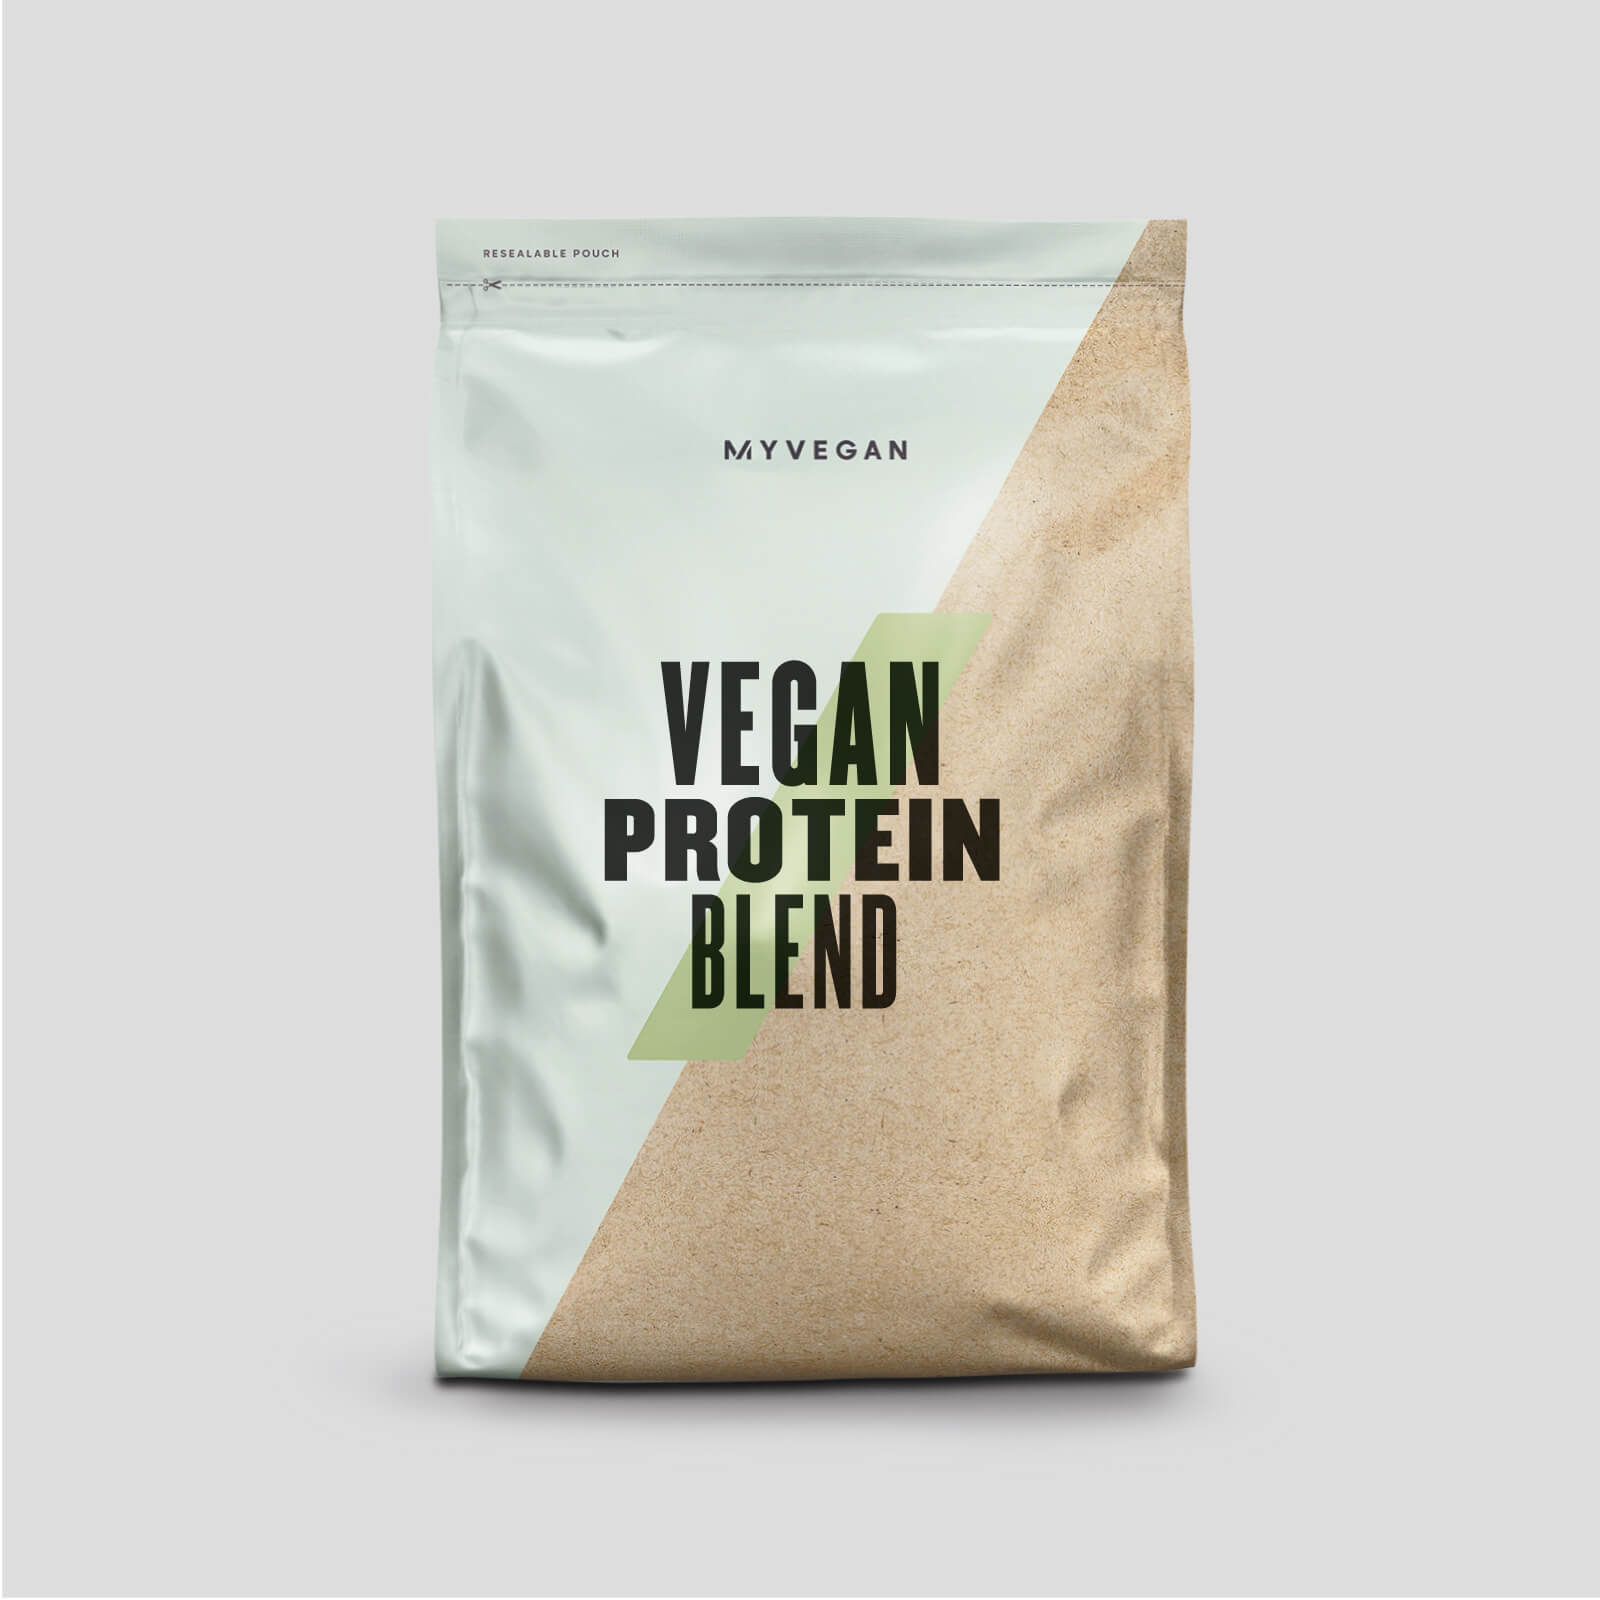 Myvegan Vegan Protein Blend - 1kg - Ruby Chocolate